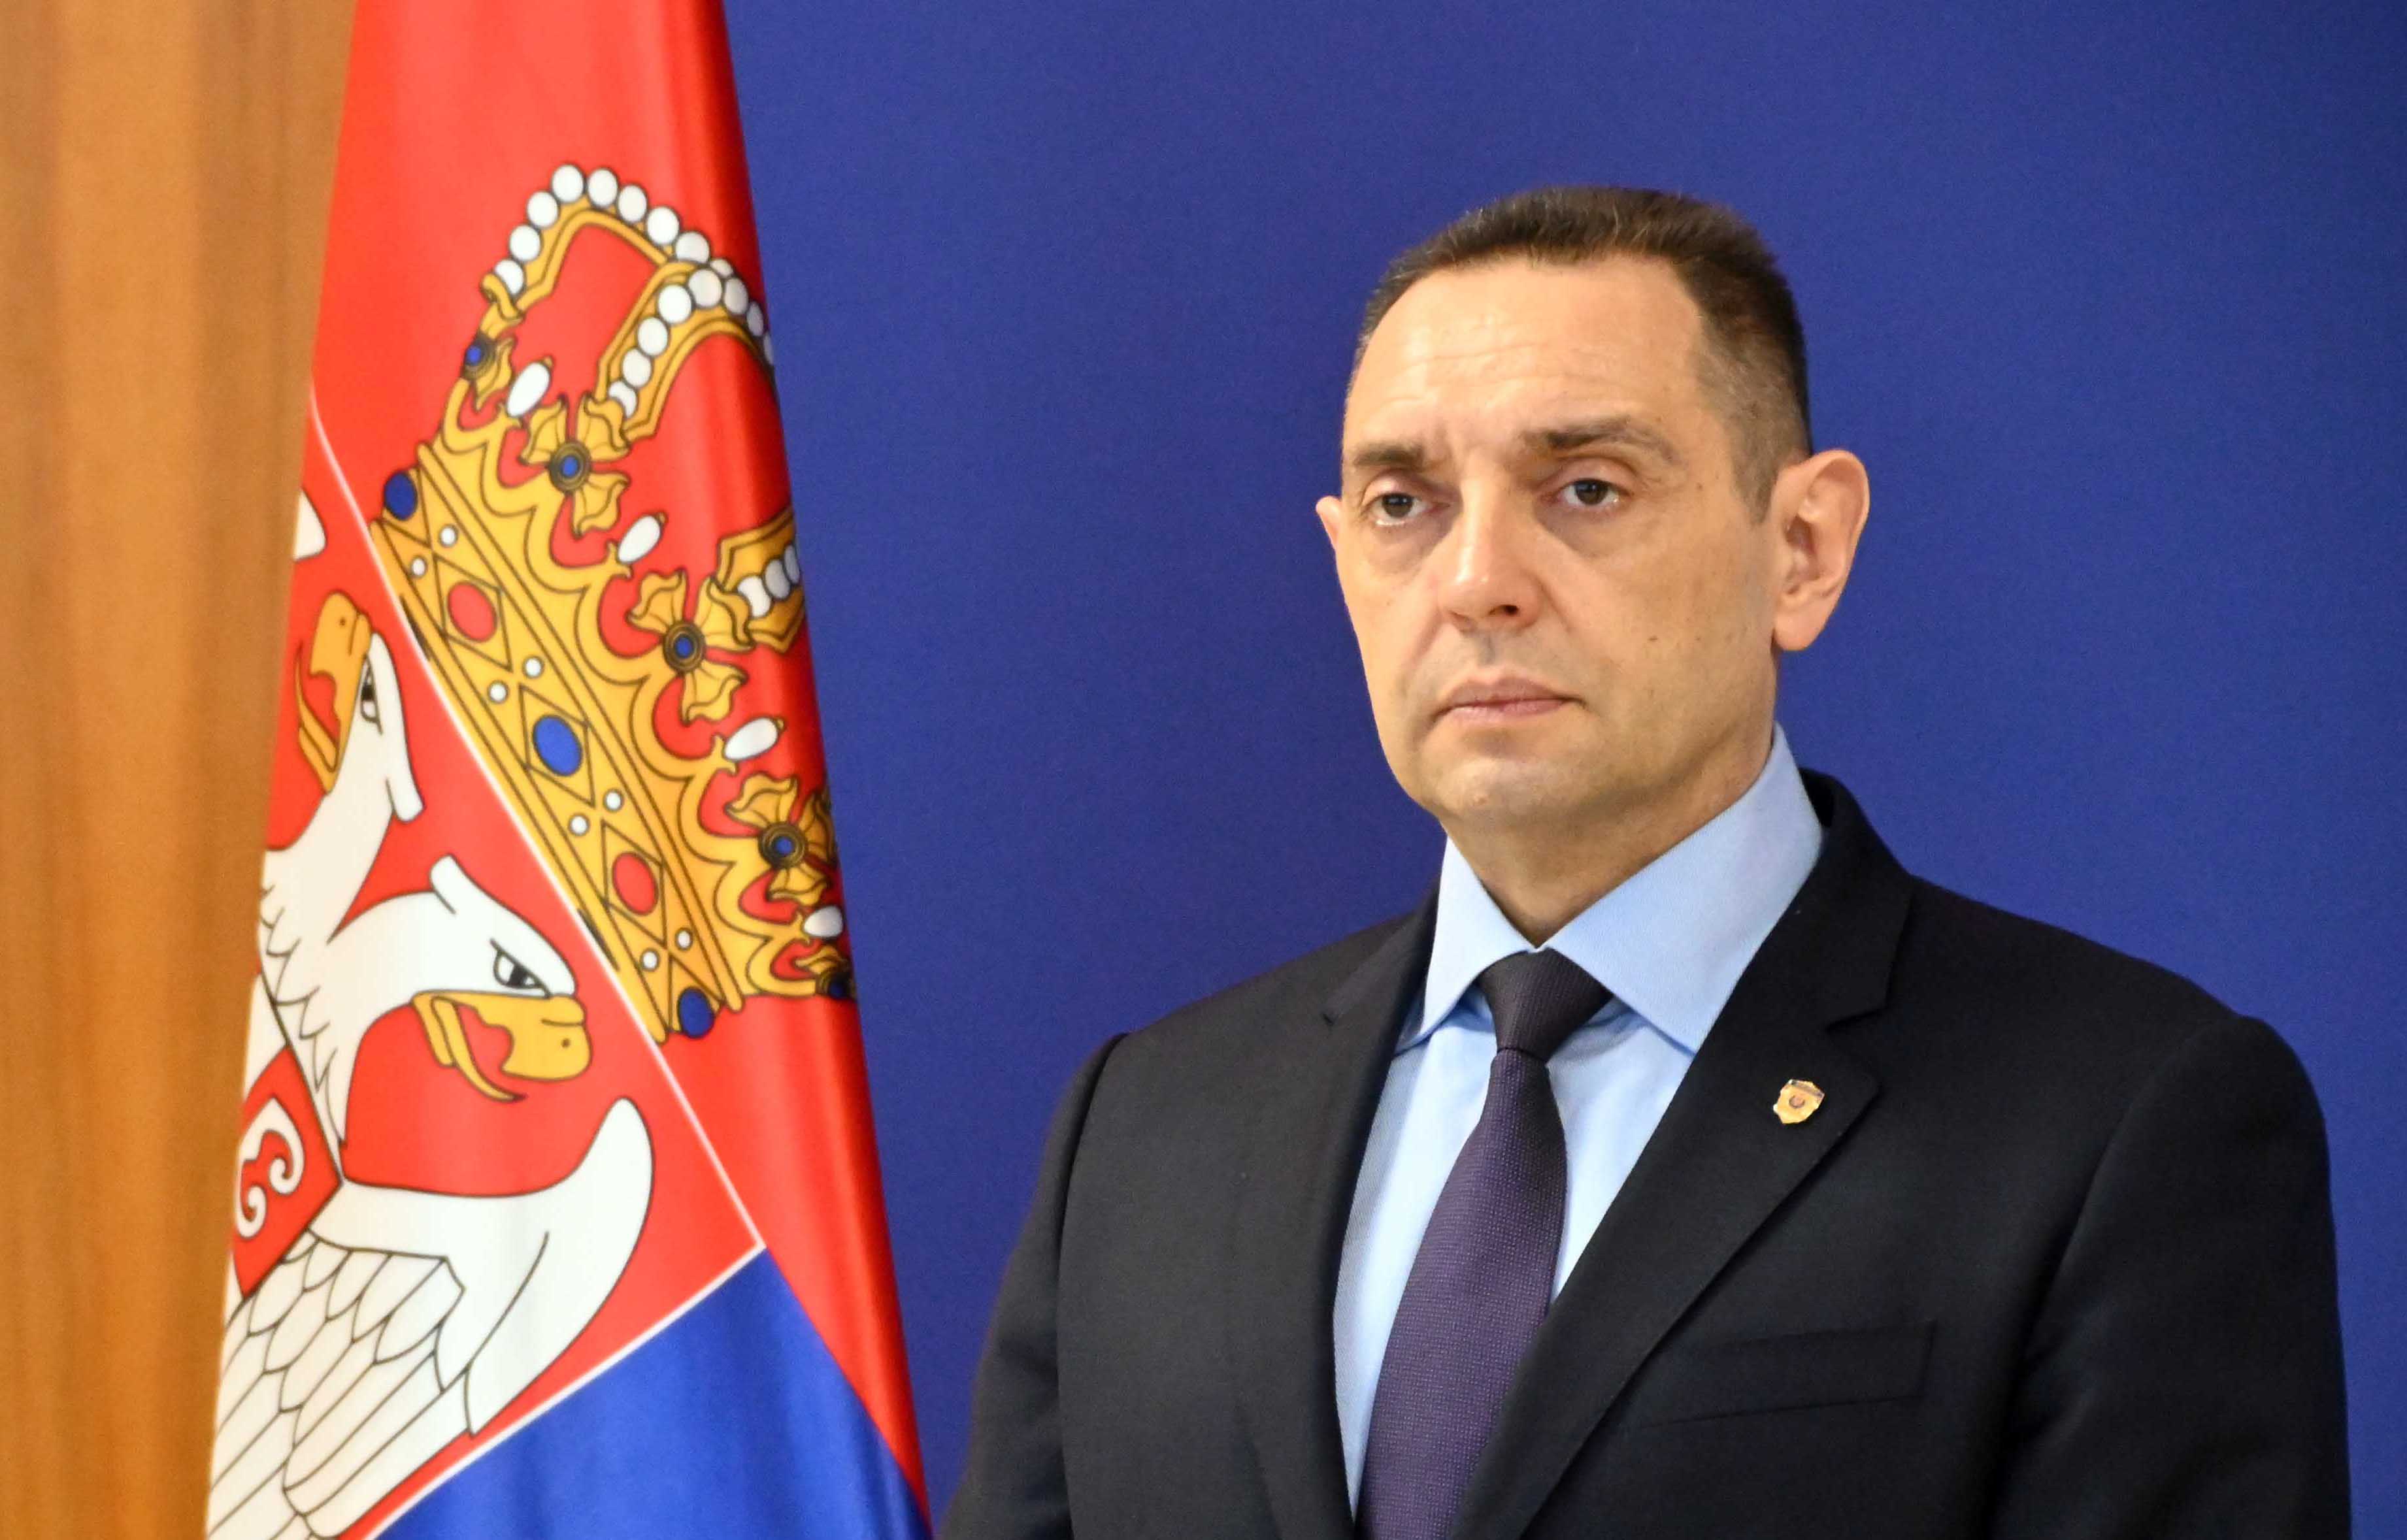 Ministar Vulin: Oluja je zločin, Bog može da oprosti, Srbi ne mogu ni da oproste ni da zaborave